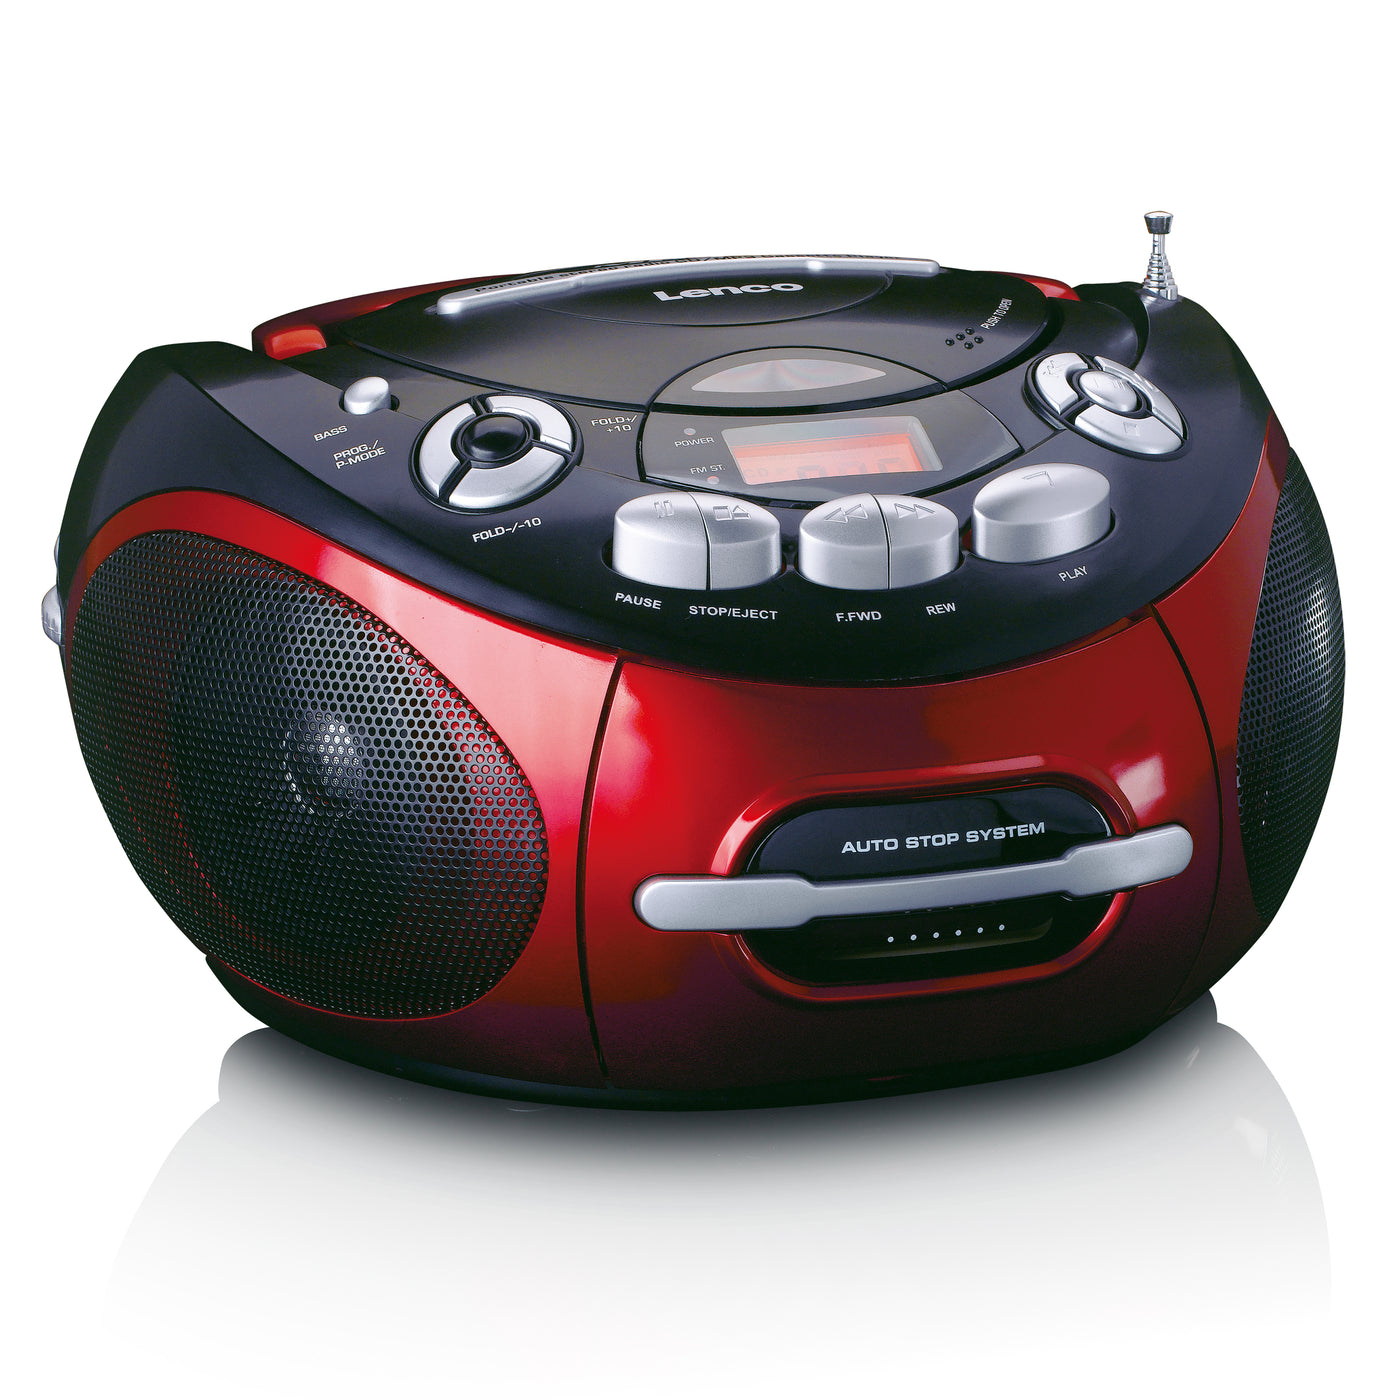 Lenco SCD-430RD - Tragbares Radio, CD/MP3, Kasette spieler - Rot